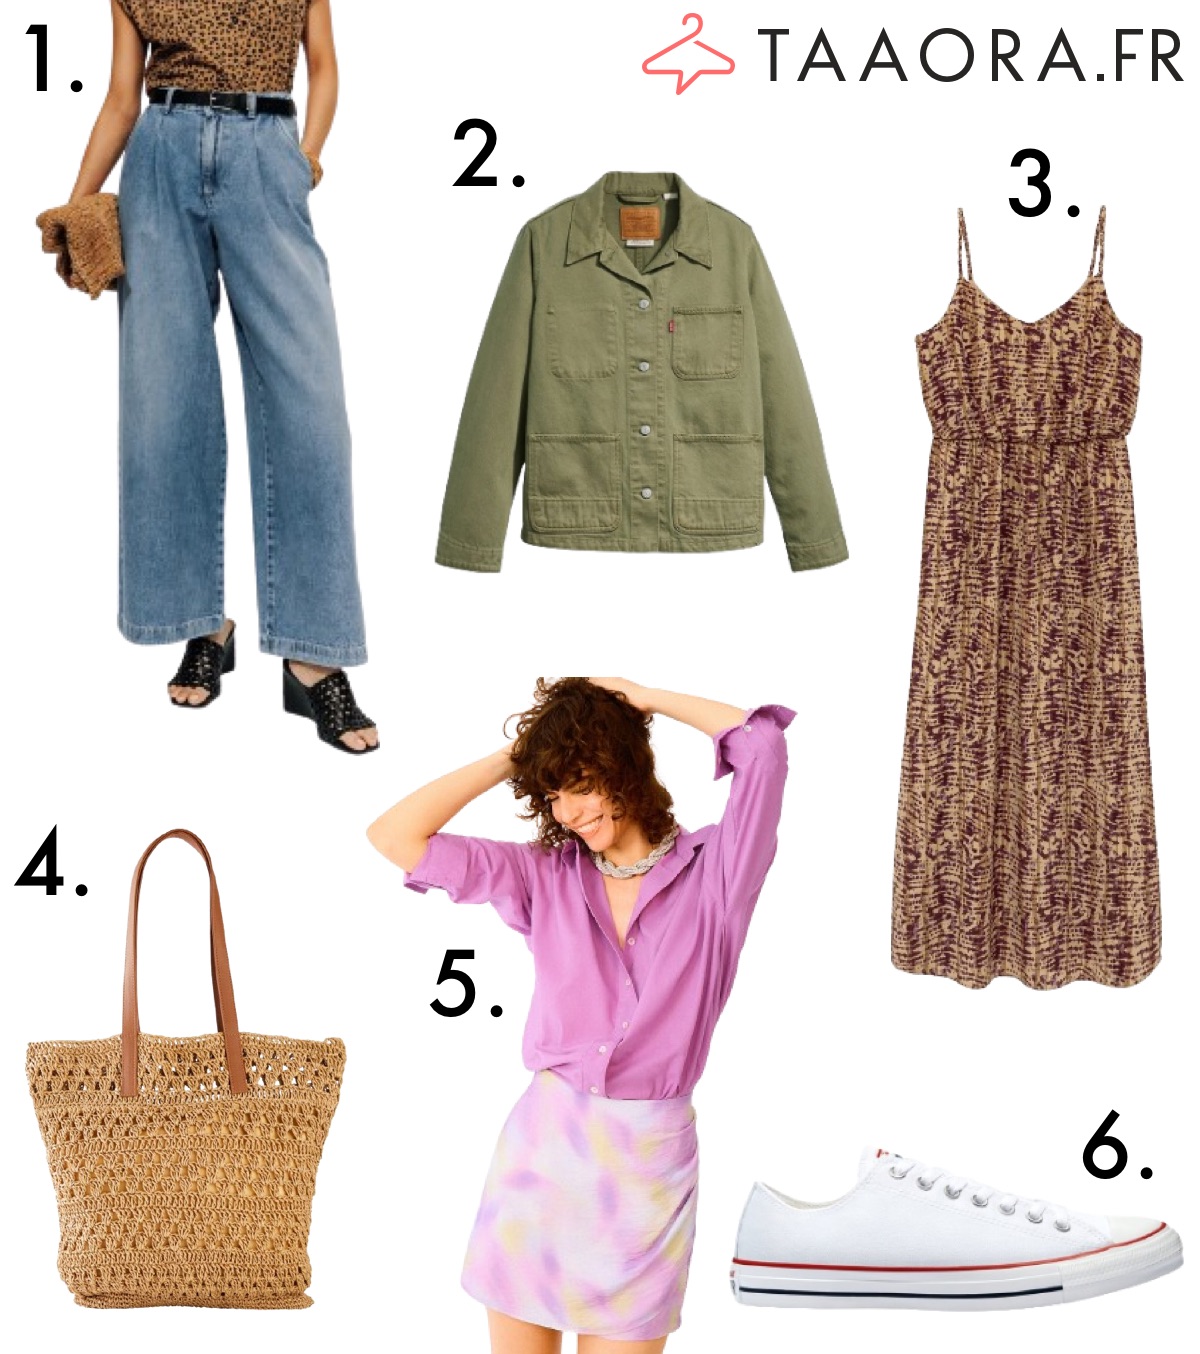 Collection mode femme avec jean palazzo, veste kaki Levi's, robe bohème, cabas en paille, chemise violette et baskets Converse blanches